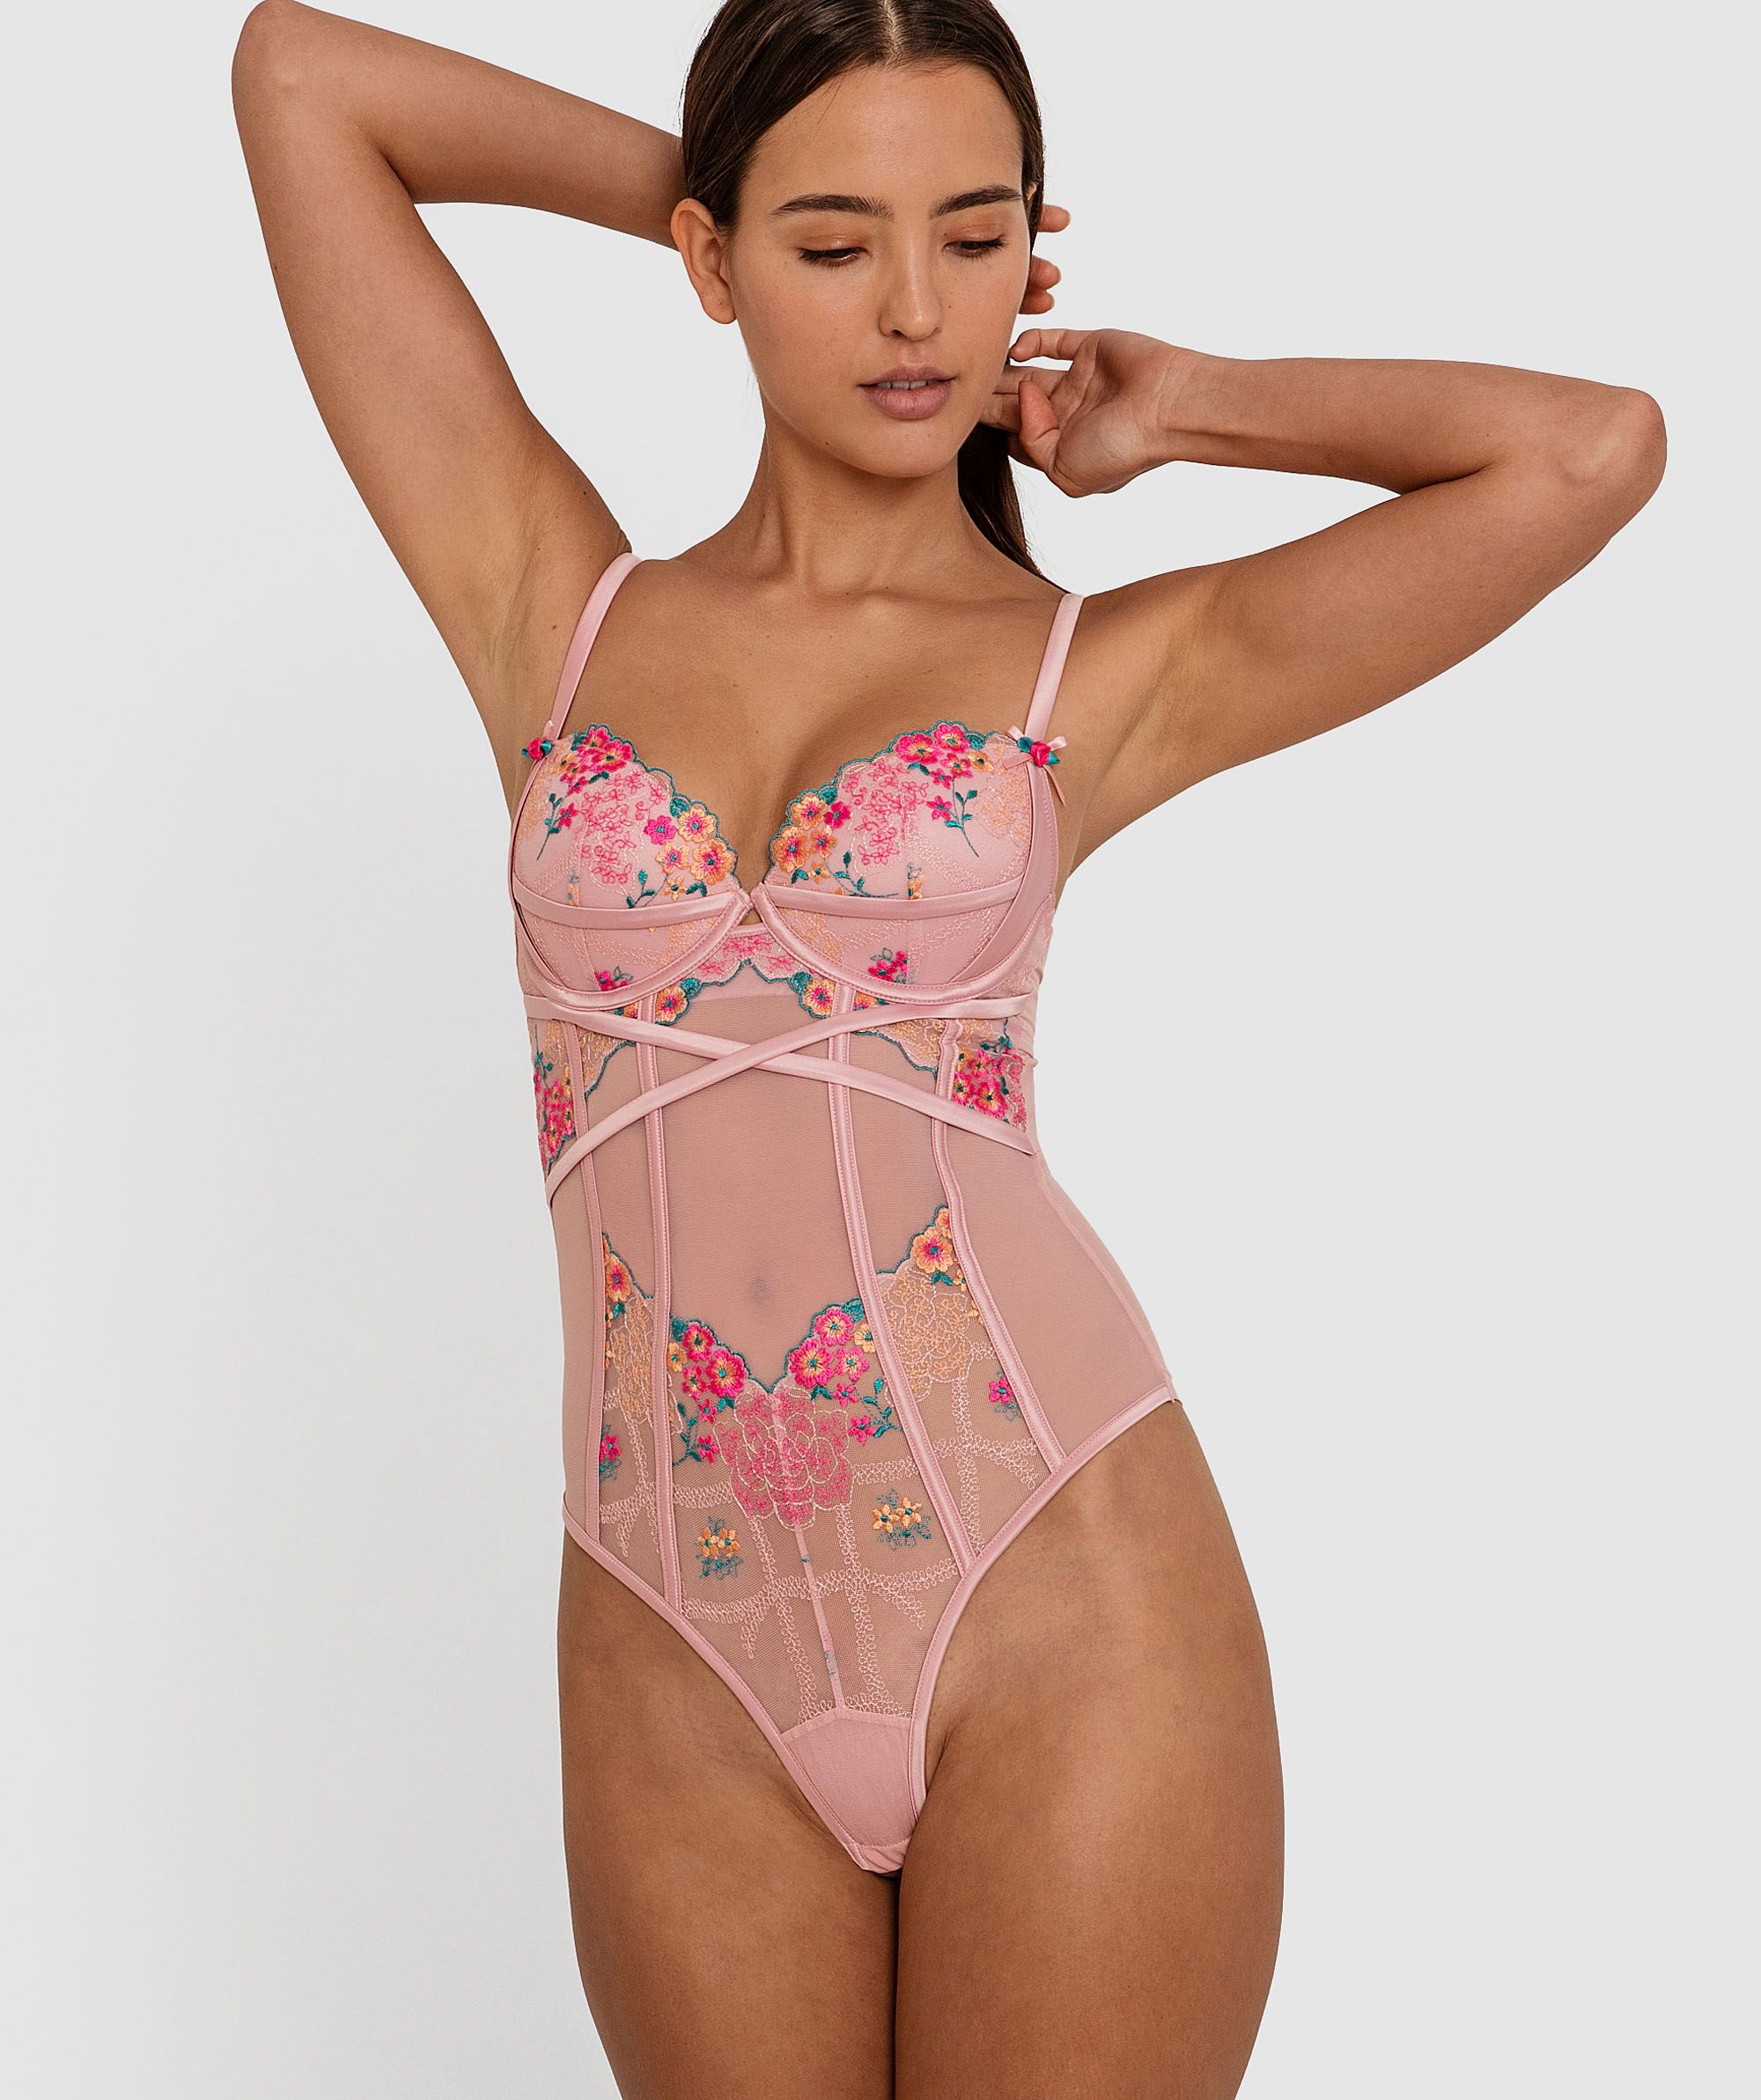 Bras N Things - Feminine Pink Lingerie Bodysuit on Designer Wardrobe